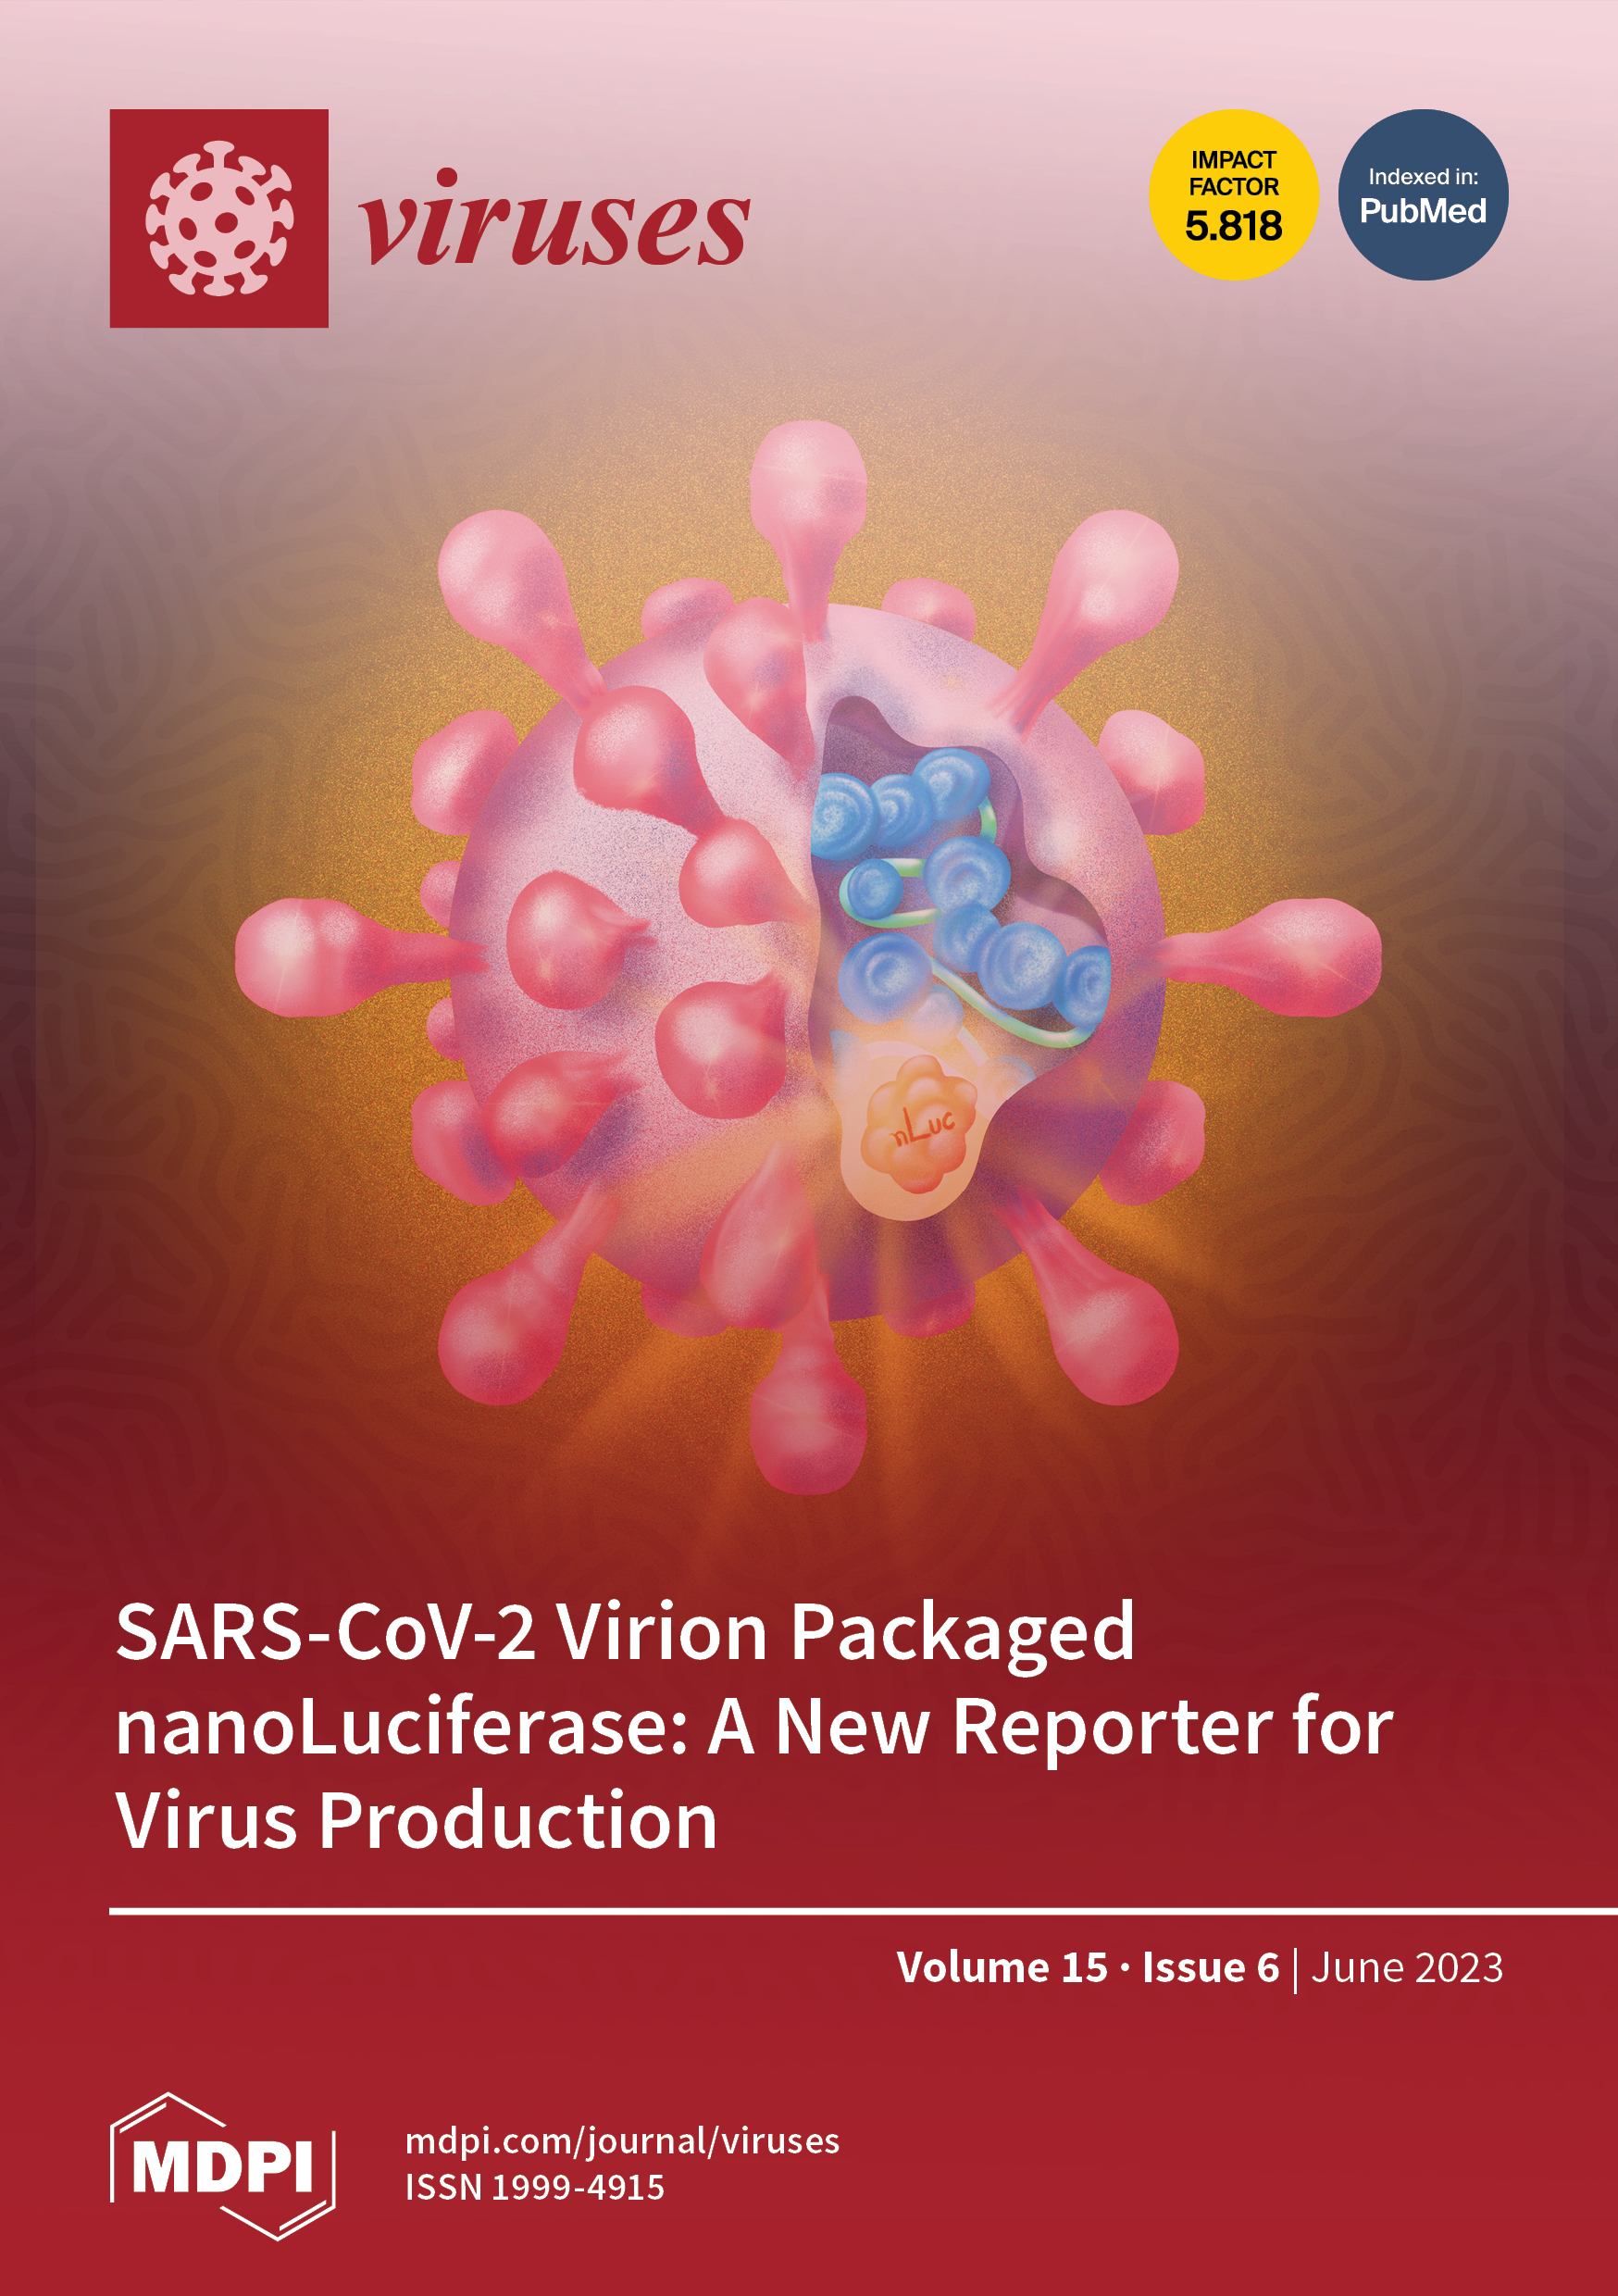 https://www.mdpi.com/files/uploaded/covers/viruses/big_cover-viruses-v15-i6.png